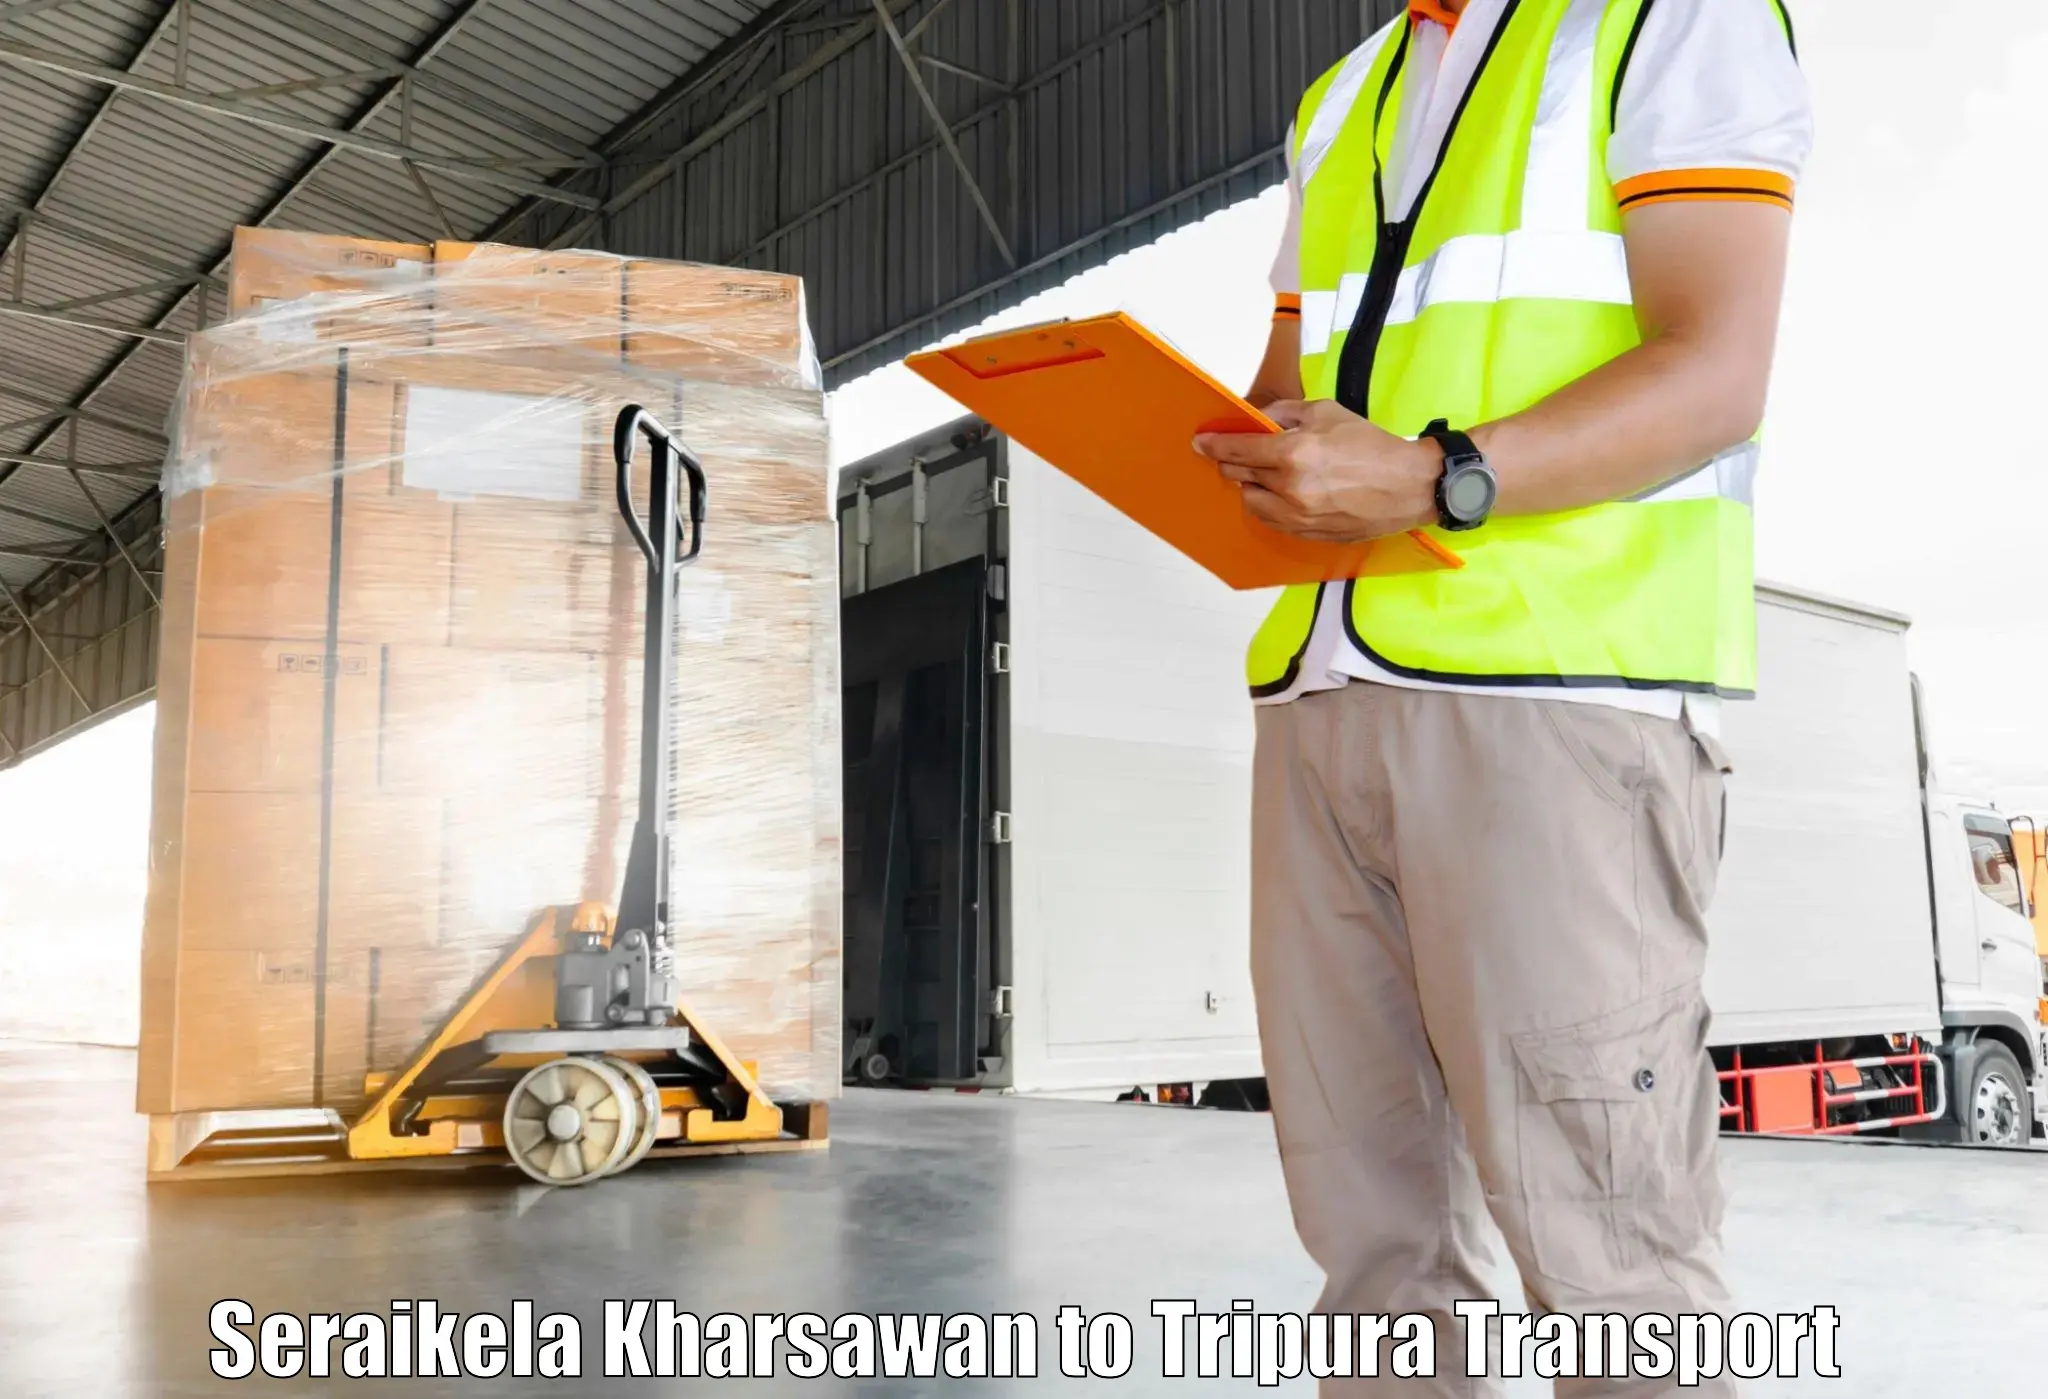 Cargo transport services Seraikela Kharsawan to Manughat